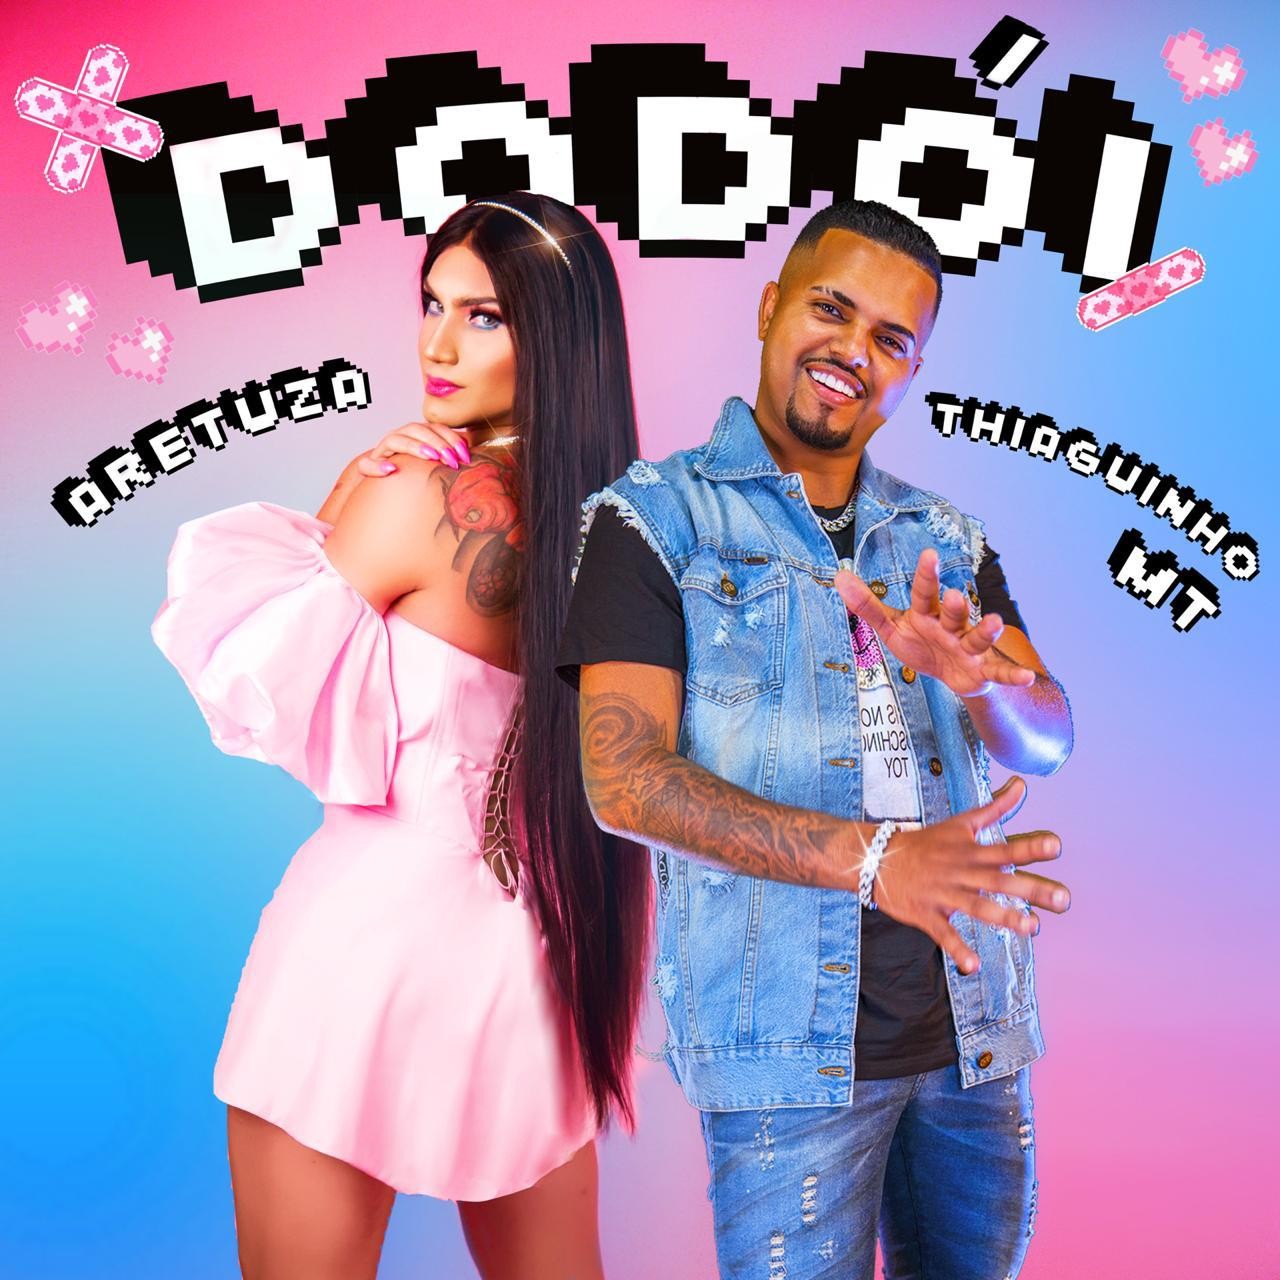 Capa do single Dodói, de Aretuza Lovi e Thiaguinho MT (Foto: Divulgação)